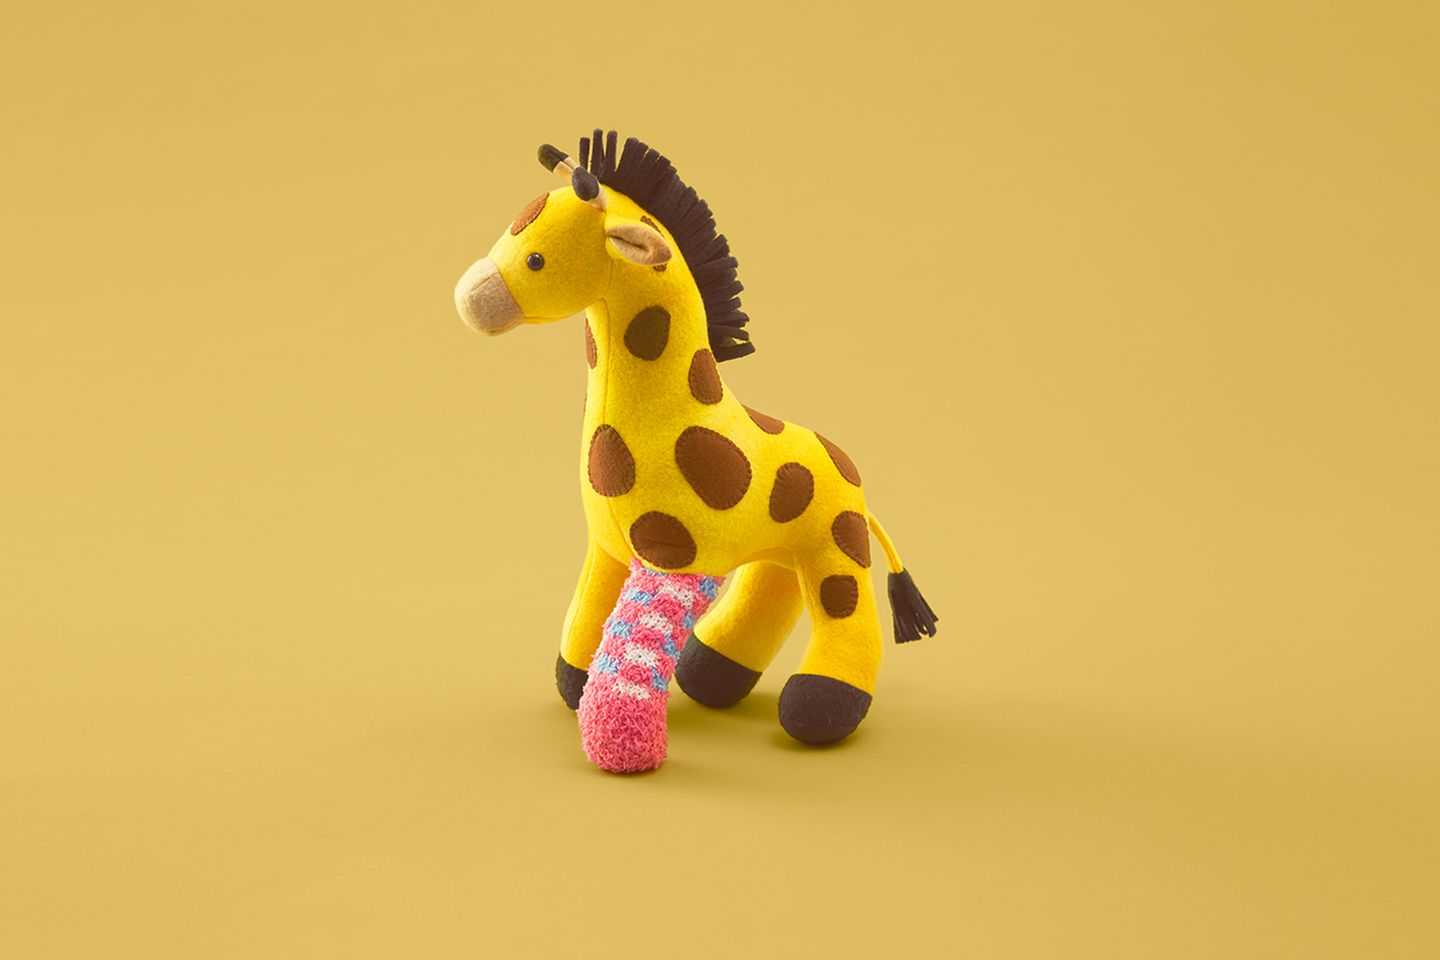 Giraffe + Affenbeinchen. Die gelungene Operation hilft dem Lieblingstier wieder auf die Beine.